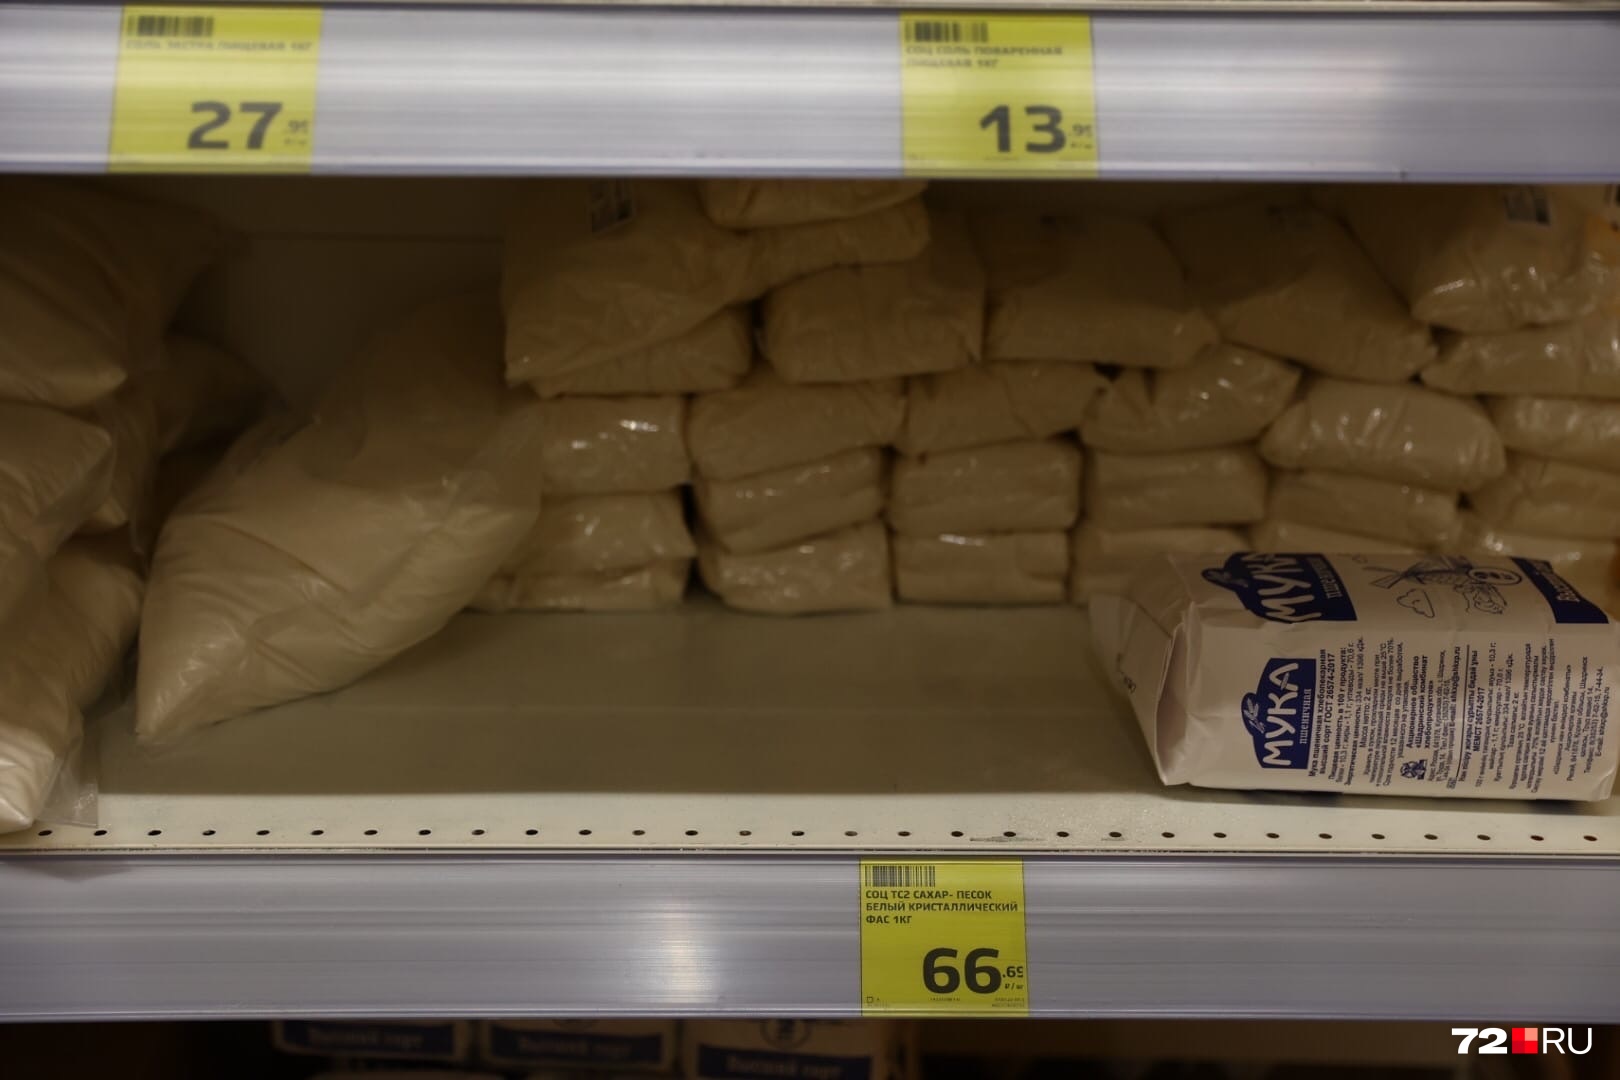 Тот самый сахар. 66 рублей за кило. Нормально по сравнению с ценами на начало года и дешево для тех, кто пережил исчезновение сладкого в марте